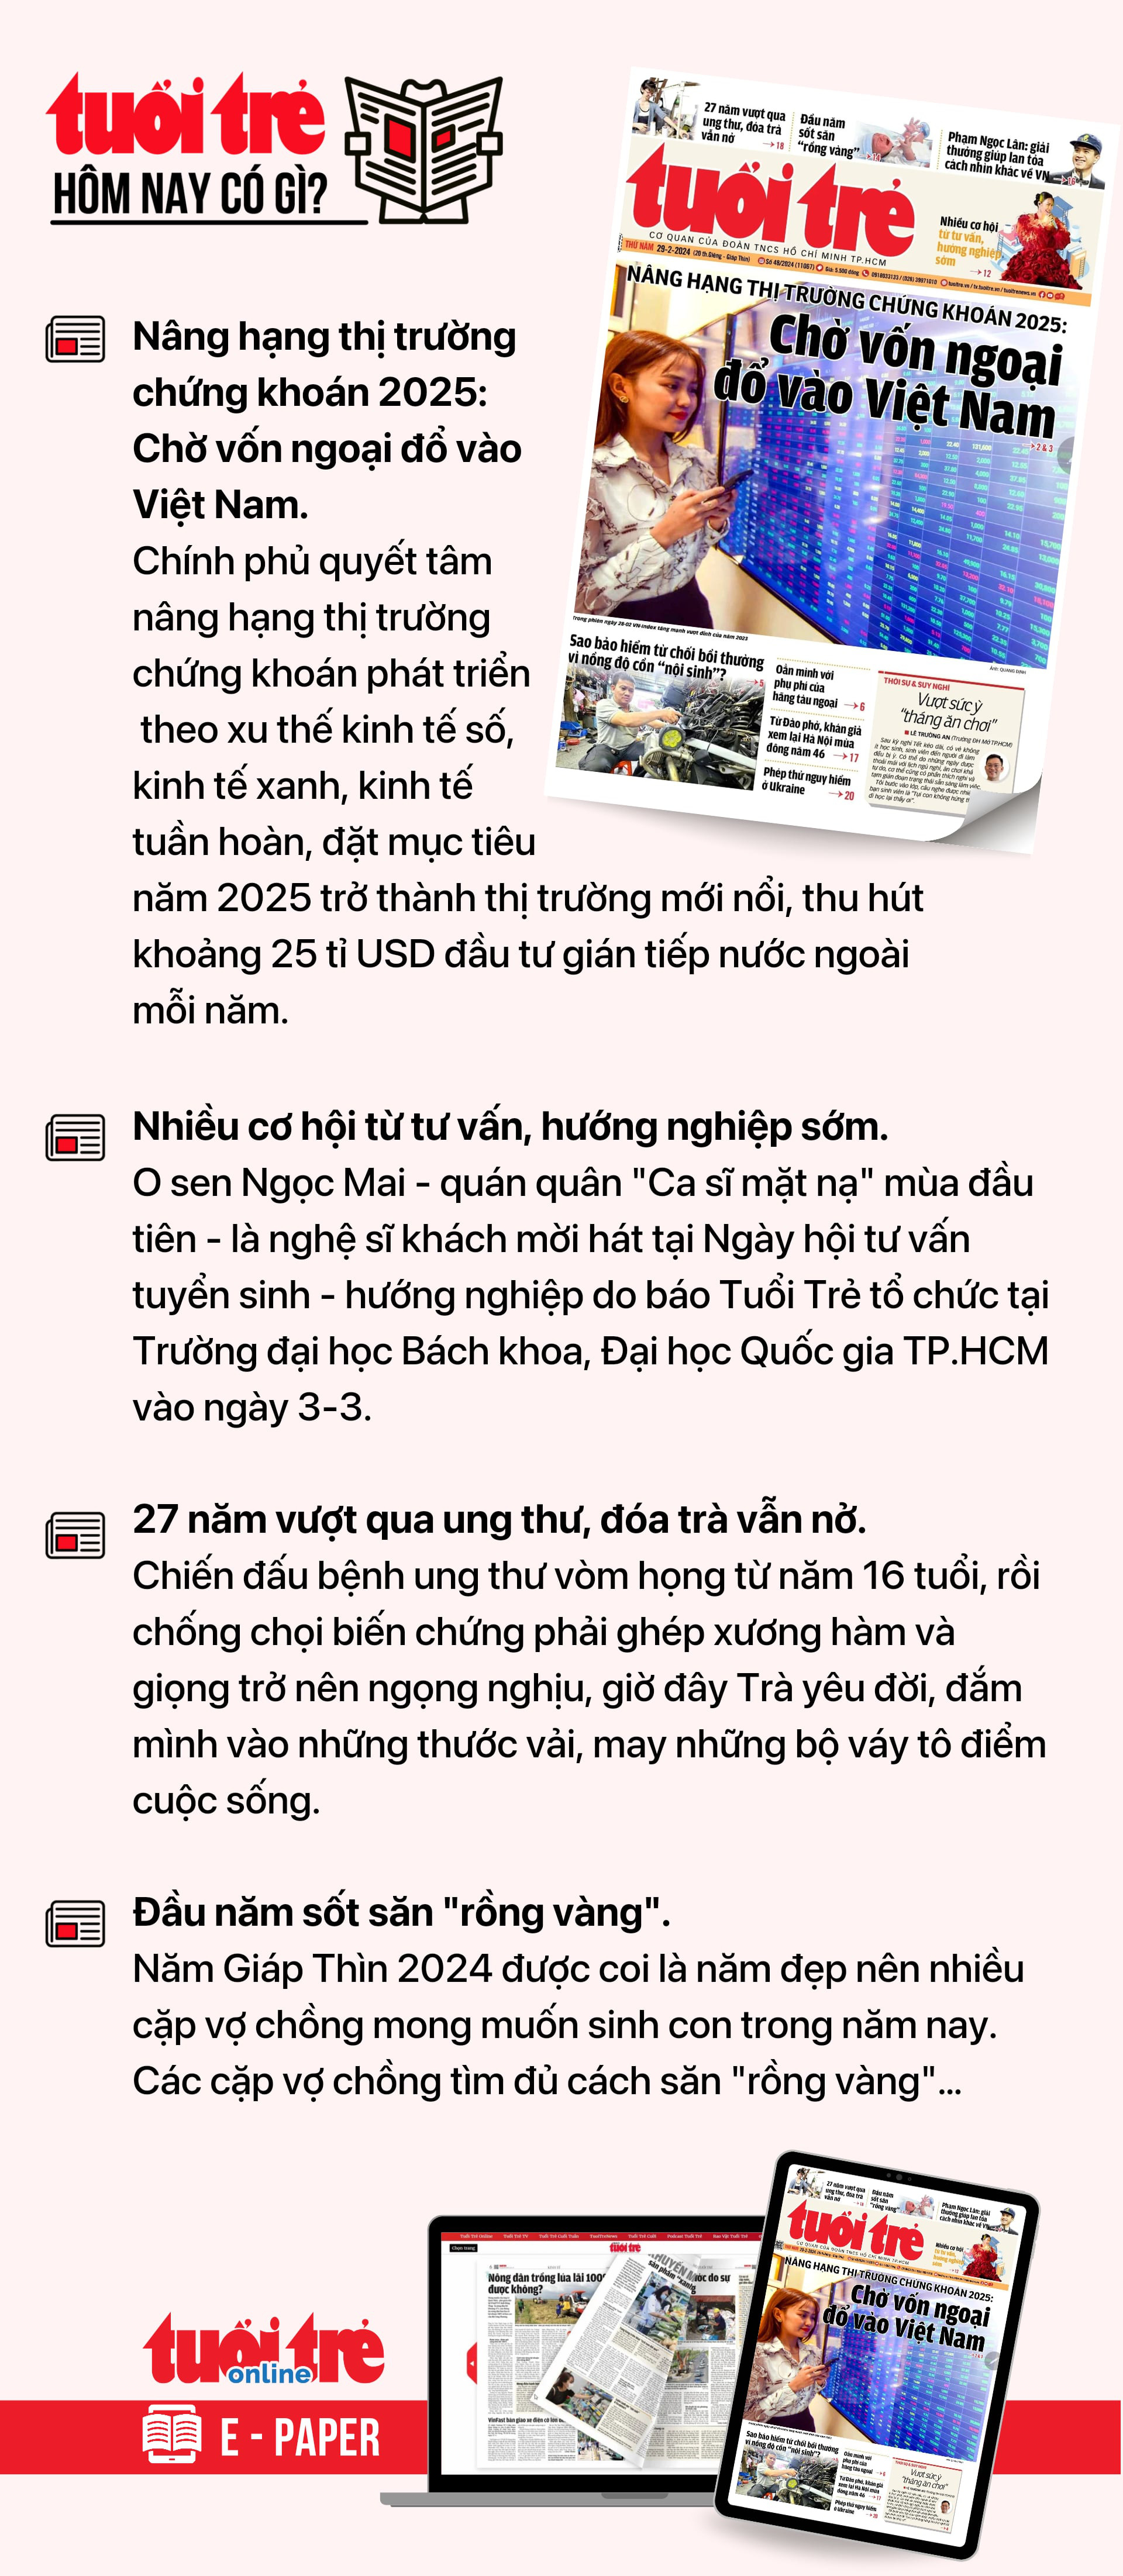 ข้อมูลหลักจากหนังสือพิมพ์ Tuoi Tre วันนี้ 29 กุมภาพันธ์  หากต้องการอ่านหนังสือพิมพ์ Tuoi Tre ในรูปแบบ E-paper โปรดสมัครรับข้อมูลจาก Tuoi Tre Sao ที่นี่